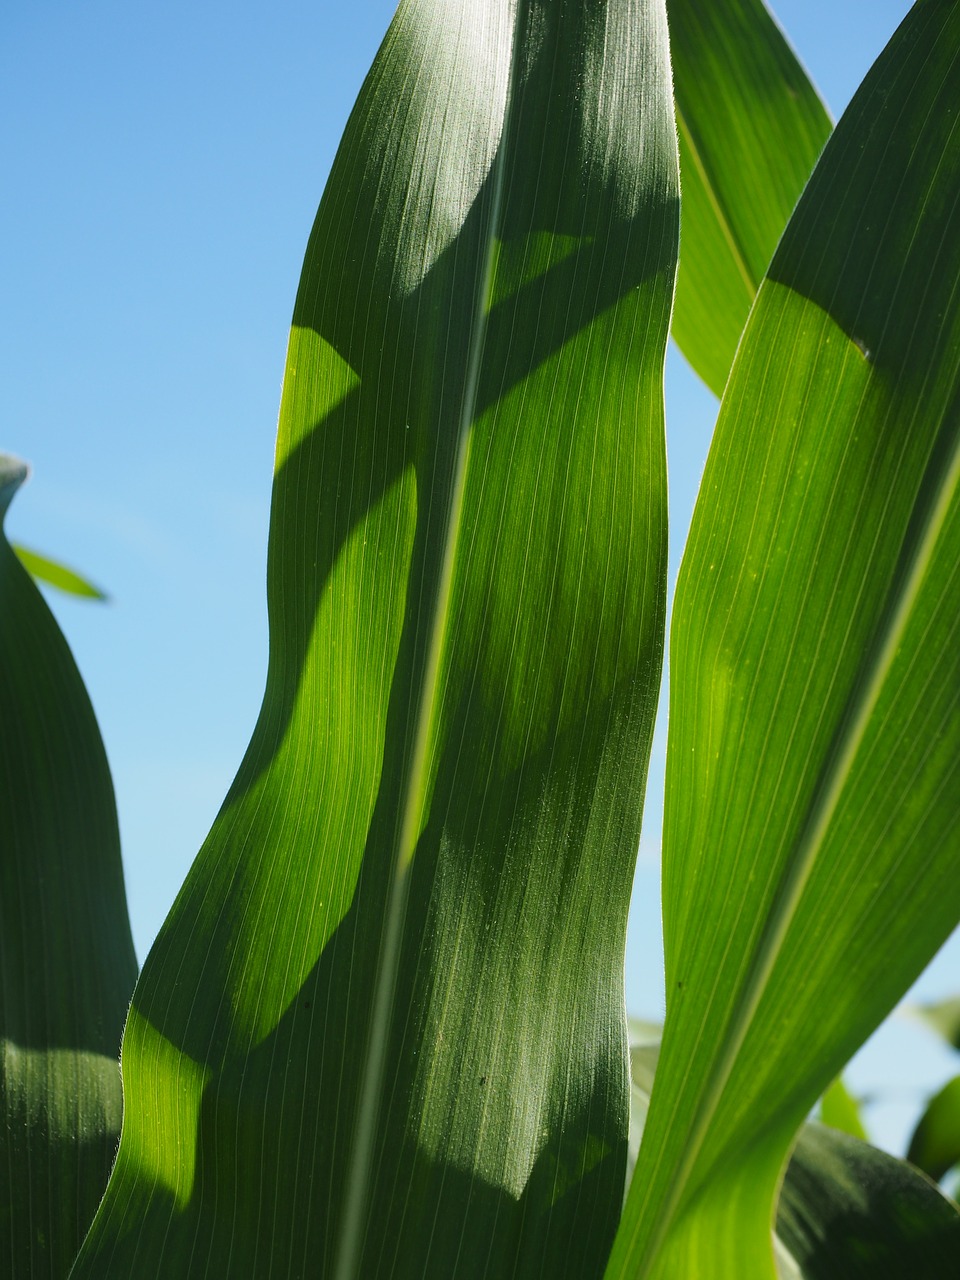 Kukurūzų Lapai, Kukurūzai, Kukurūzų Laukas, Žalias, Laukas, Žemdirbystė, Pašariniai Kukurūzai, Grūdai, Maistas, Naminių Gyvūnėlių Maistas